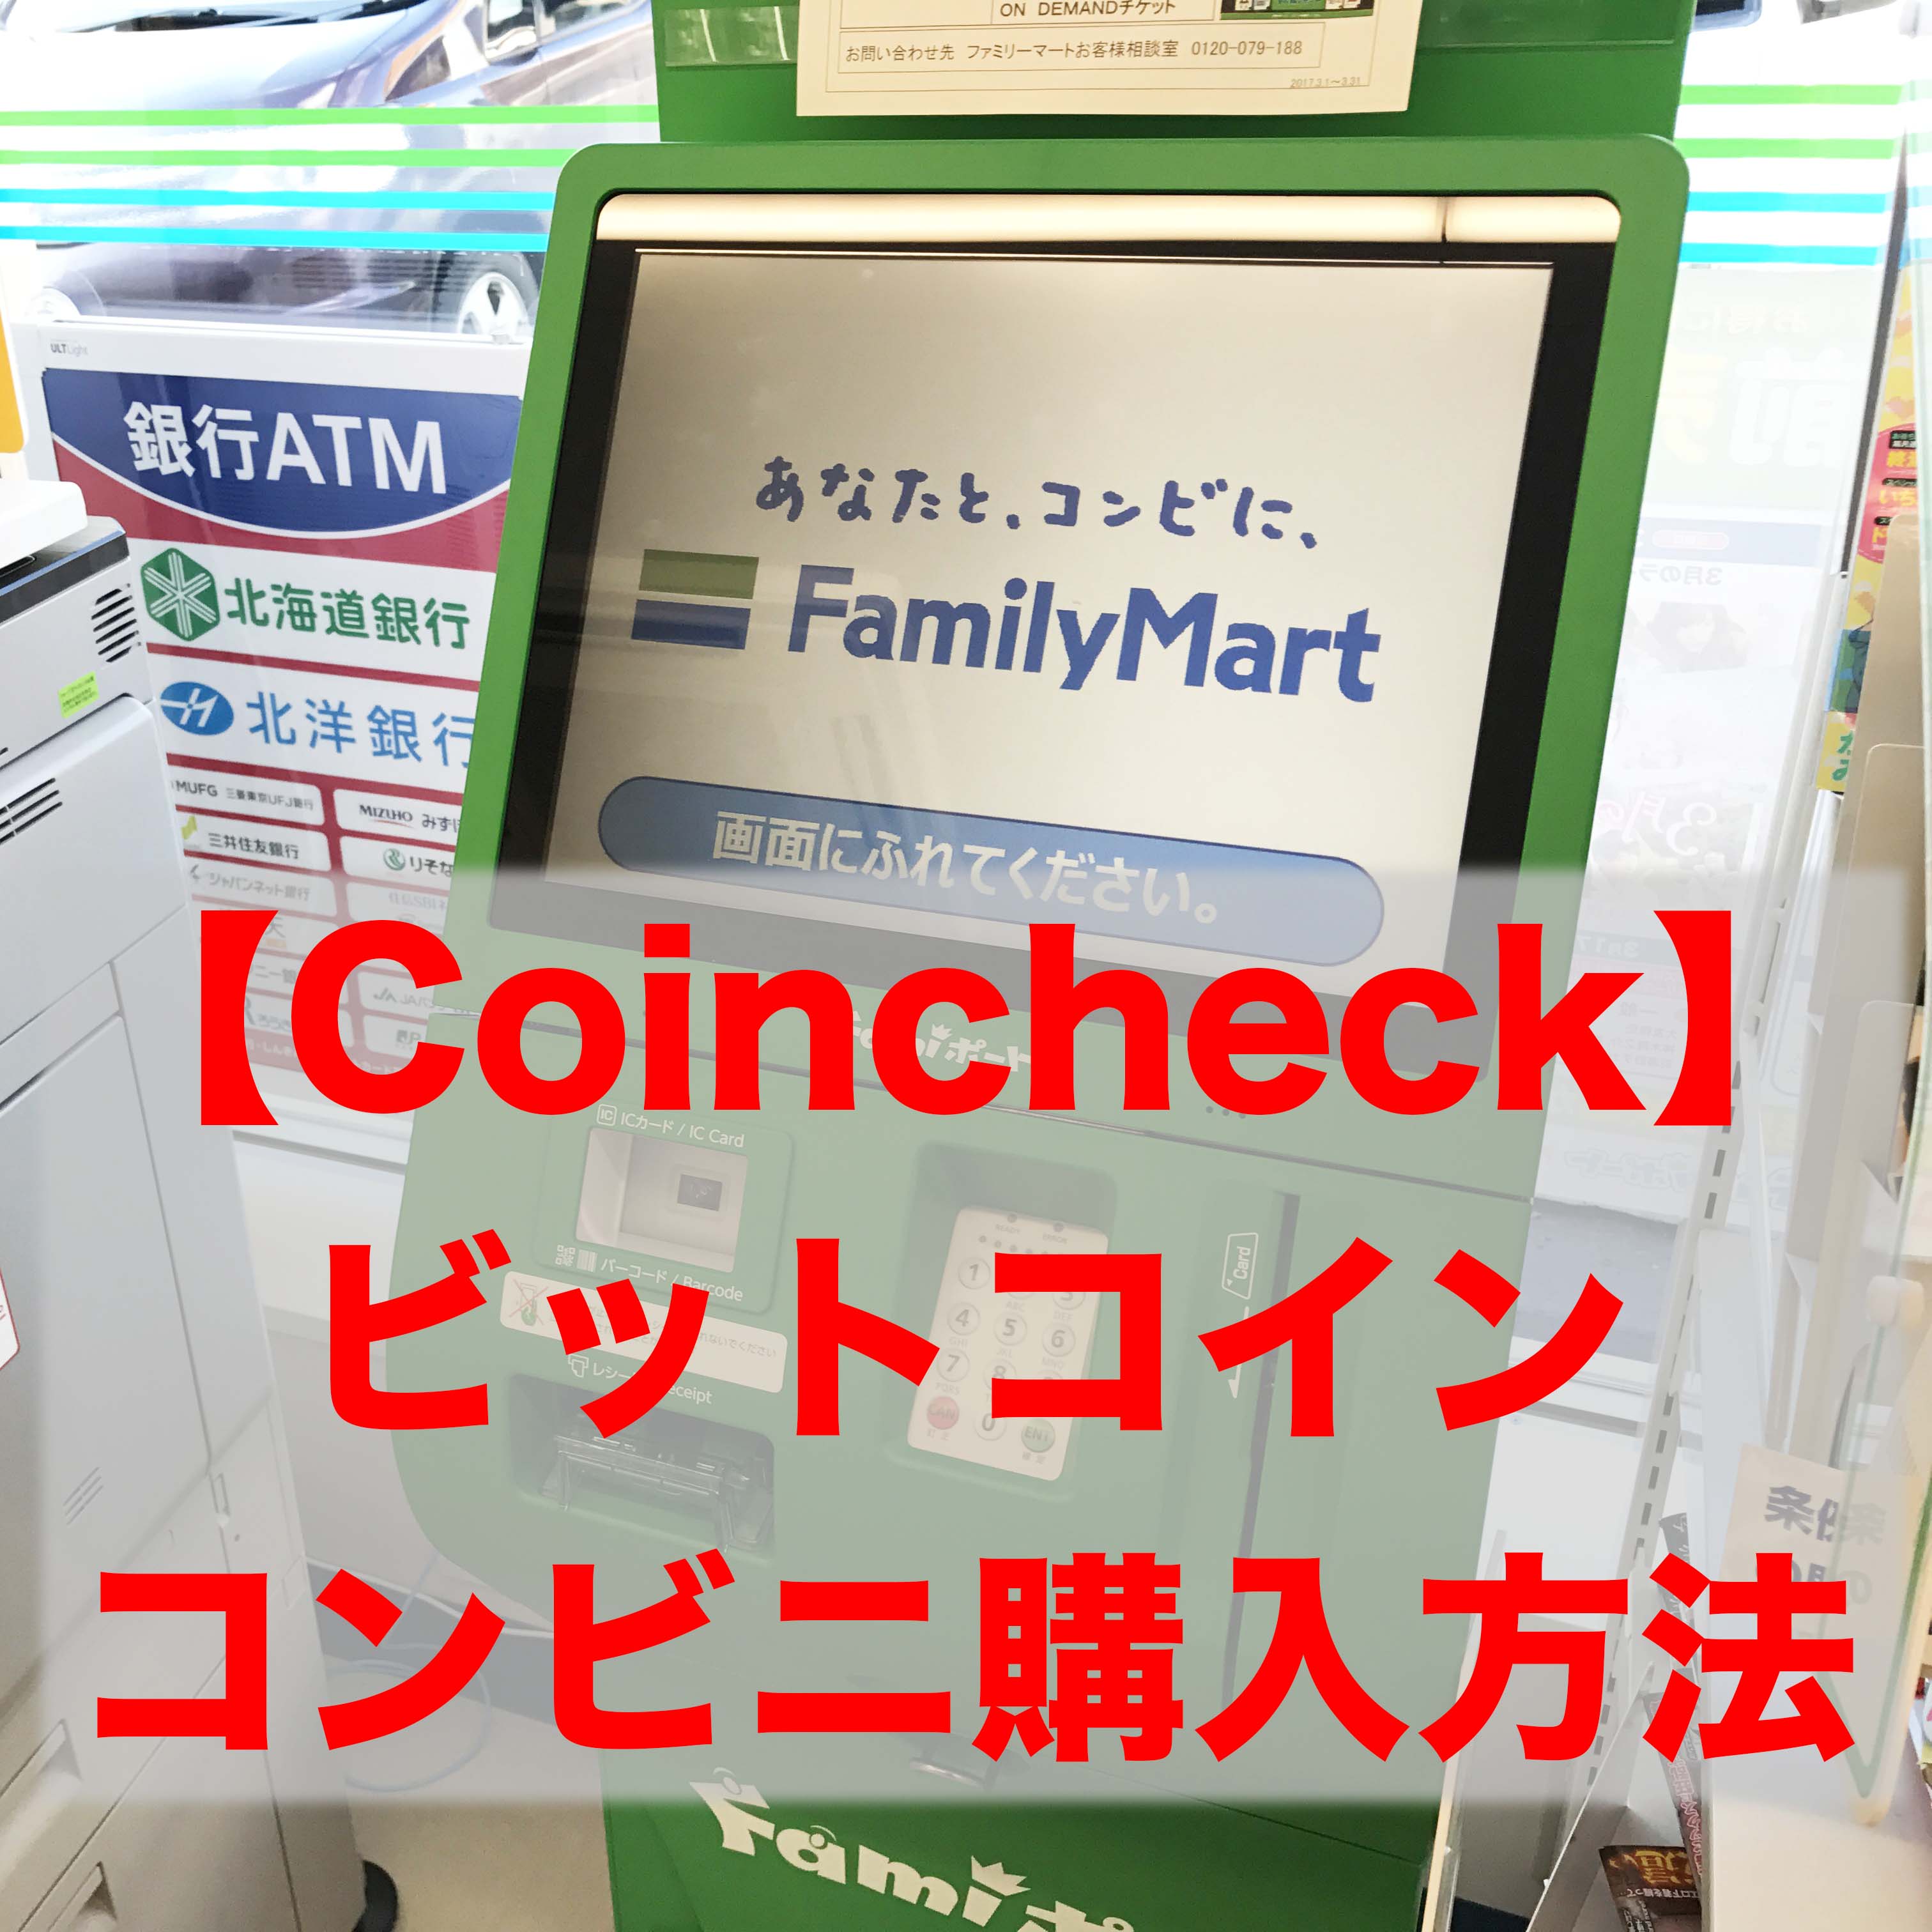 【Coincheck】コンビニ払いでビットコインを購入する方法